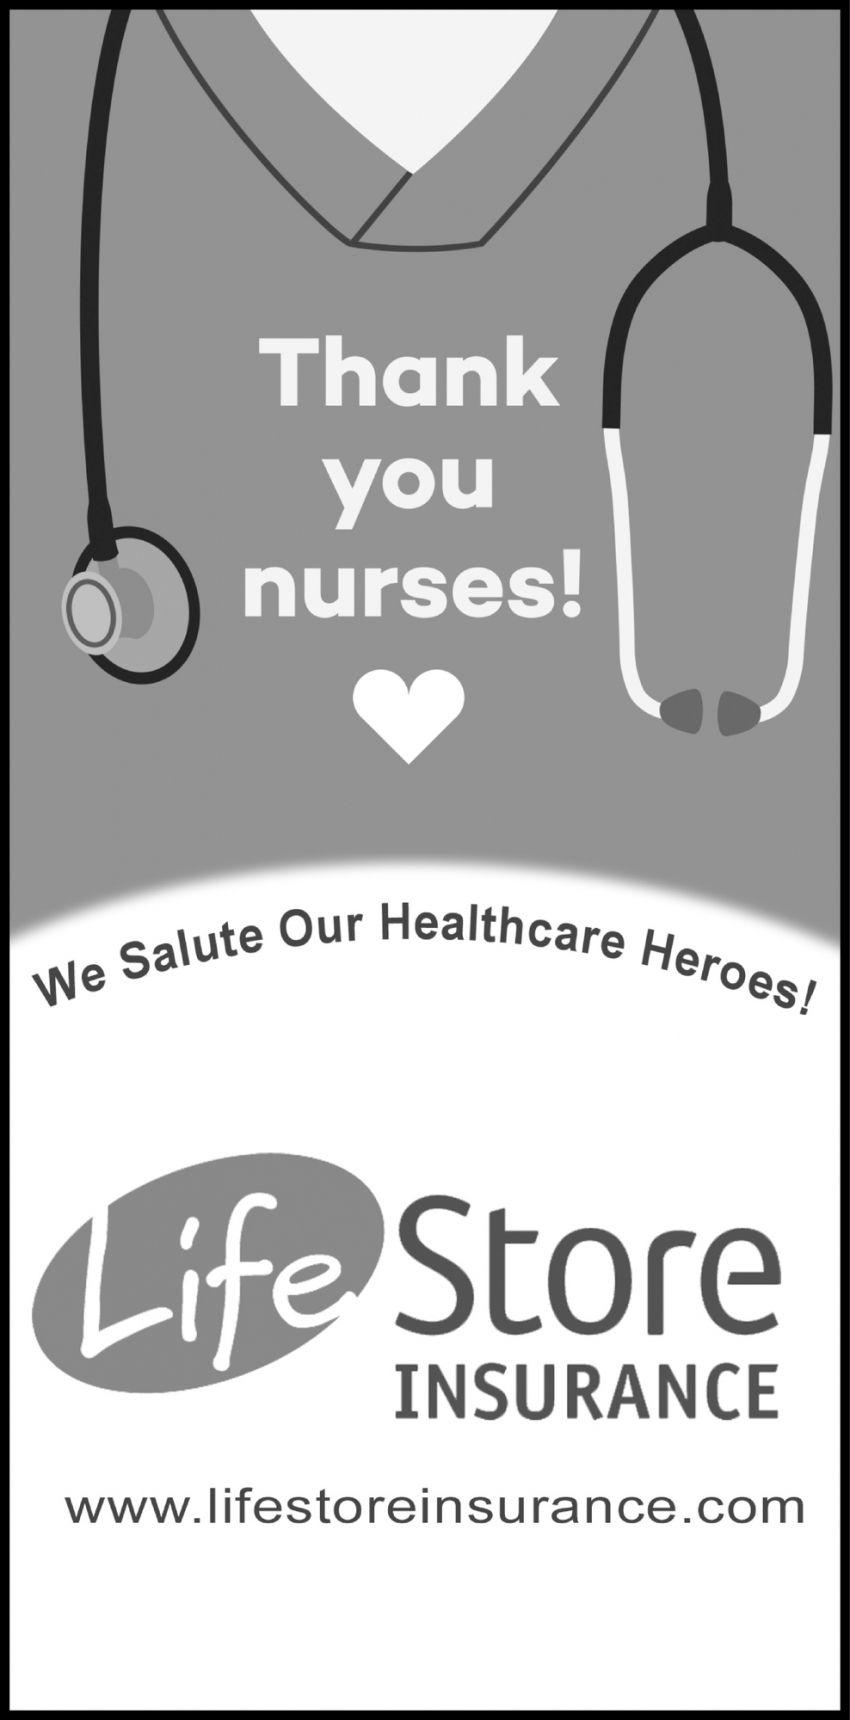 Thank You Nurses!